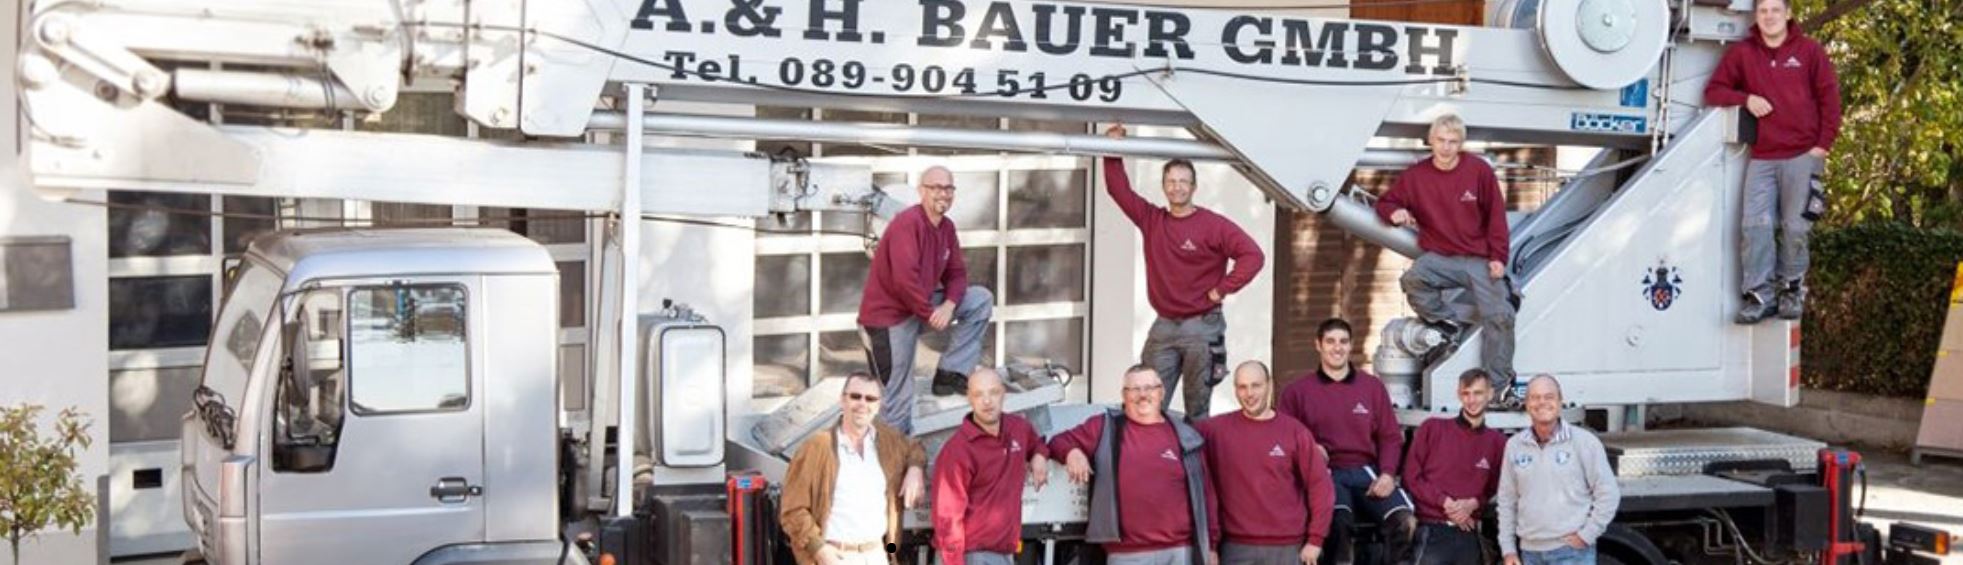 Kundenfoto 3 Spengler und Dachdecker A. & H. Bauer GmbH München